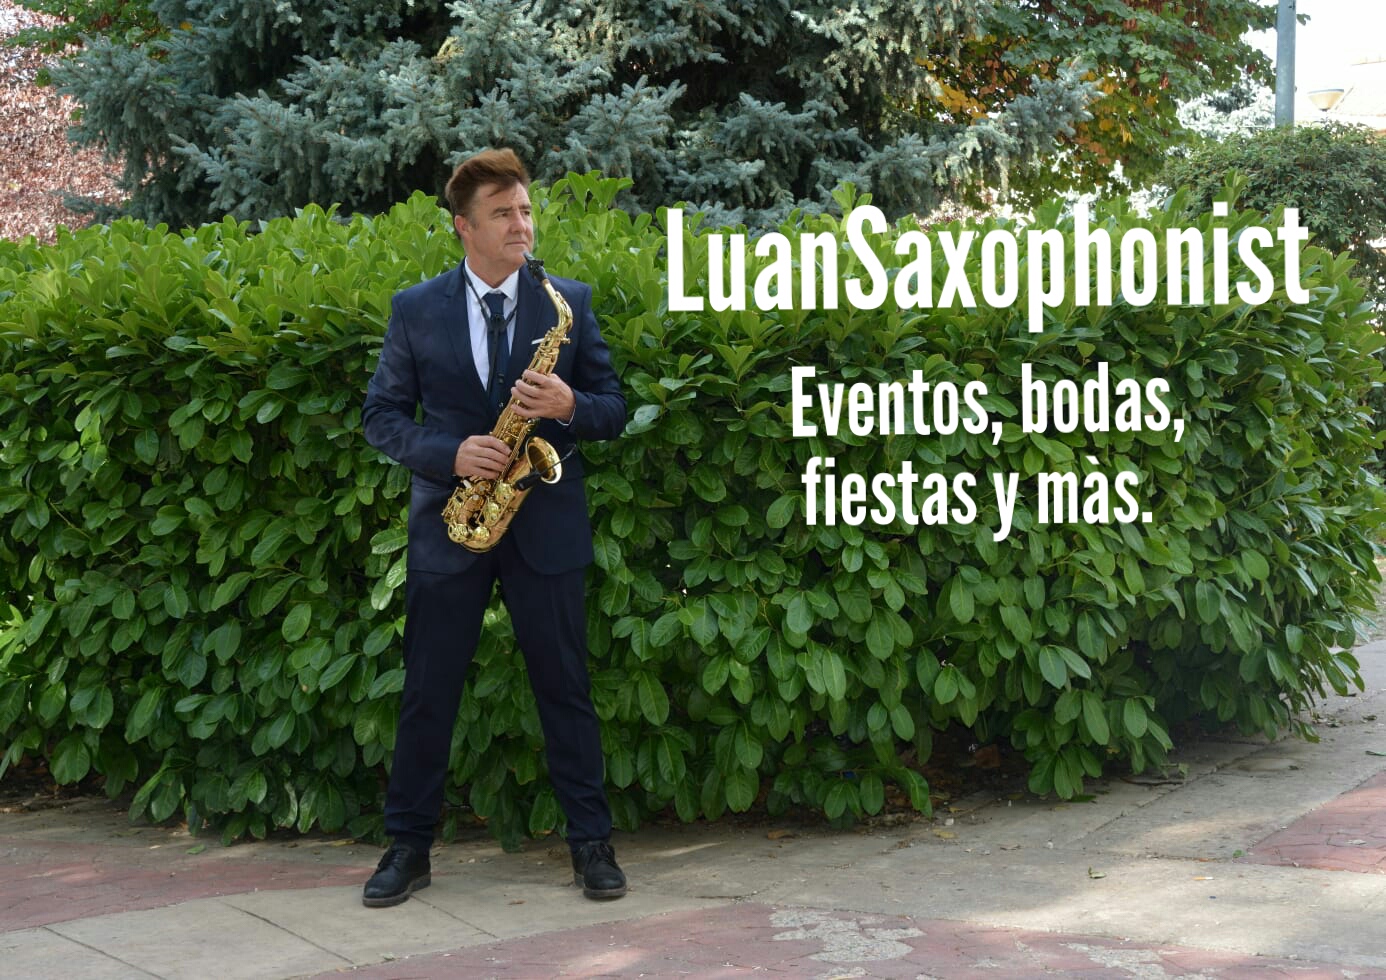 LuanSaxophonist